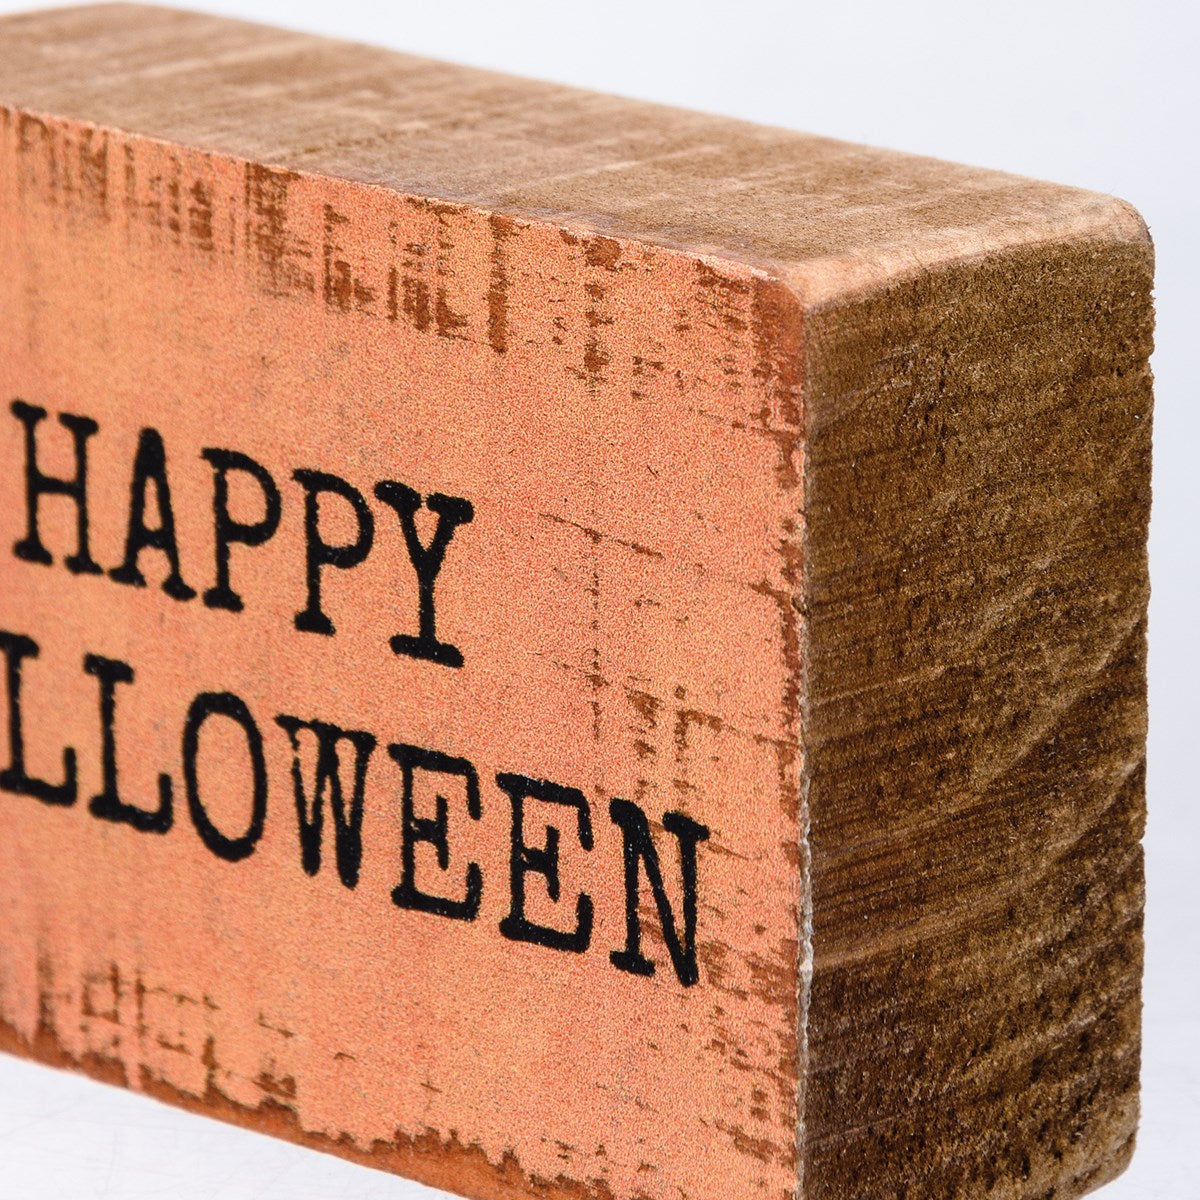 Happy Halloween Block Sign